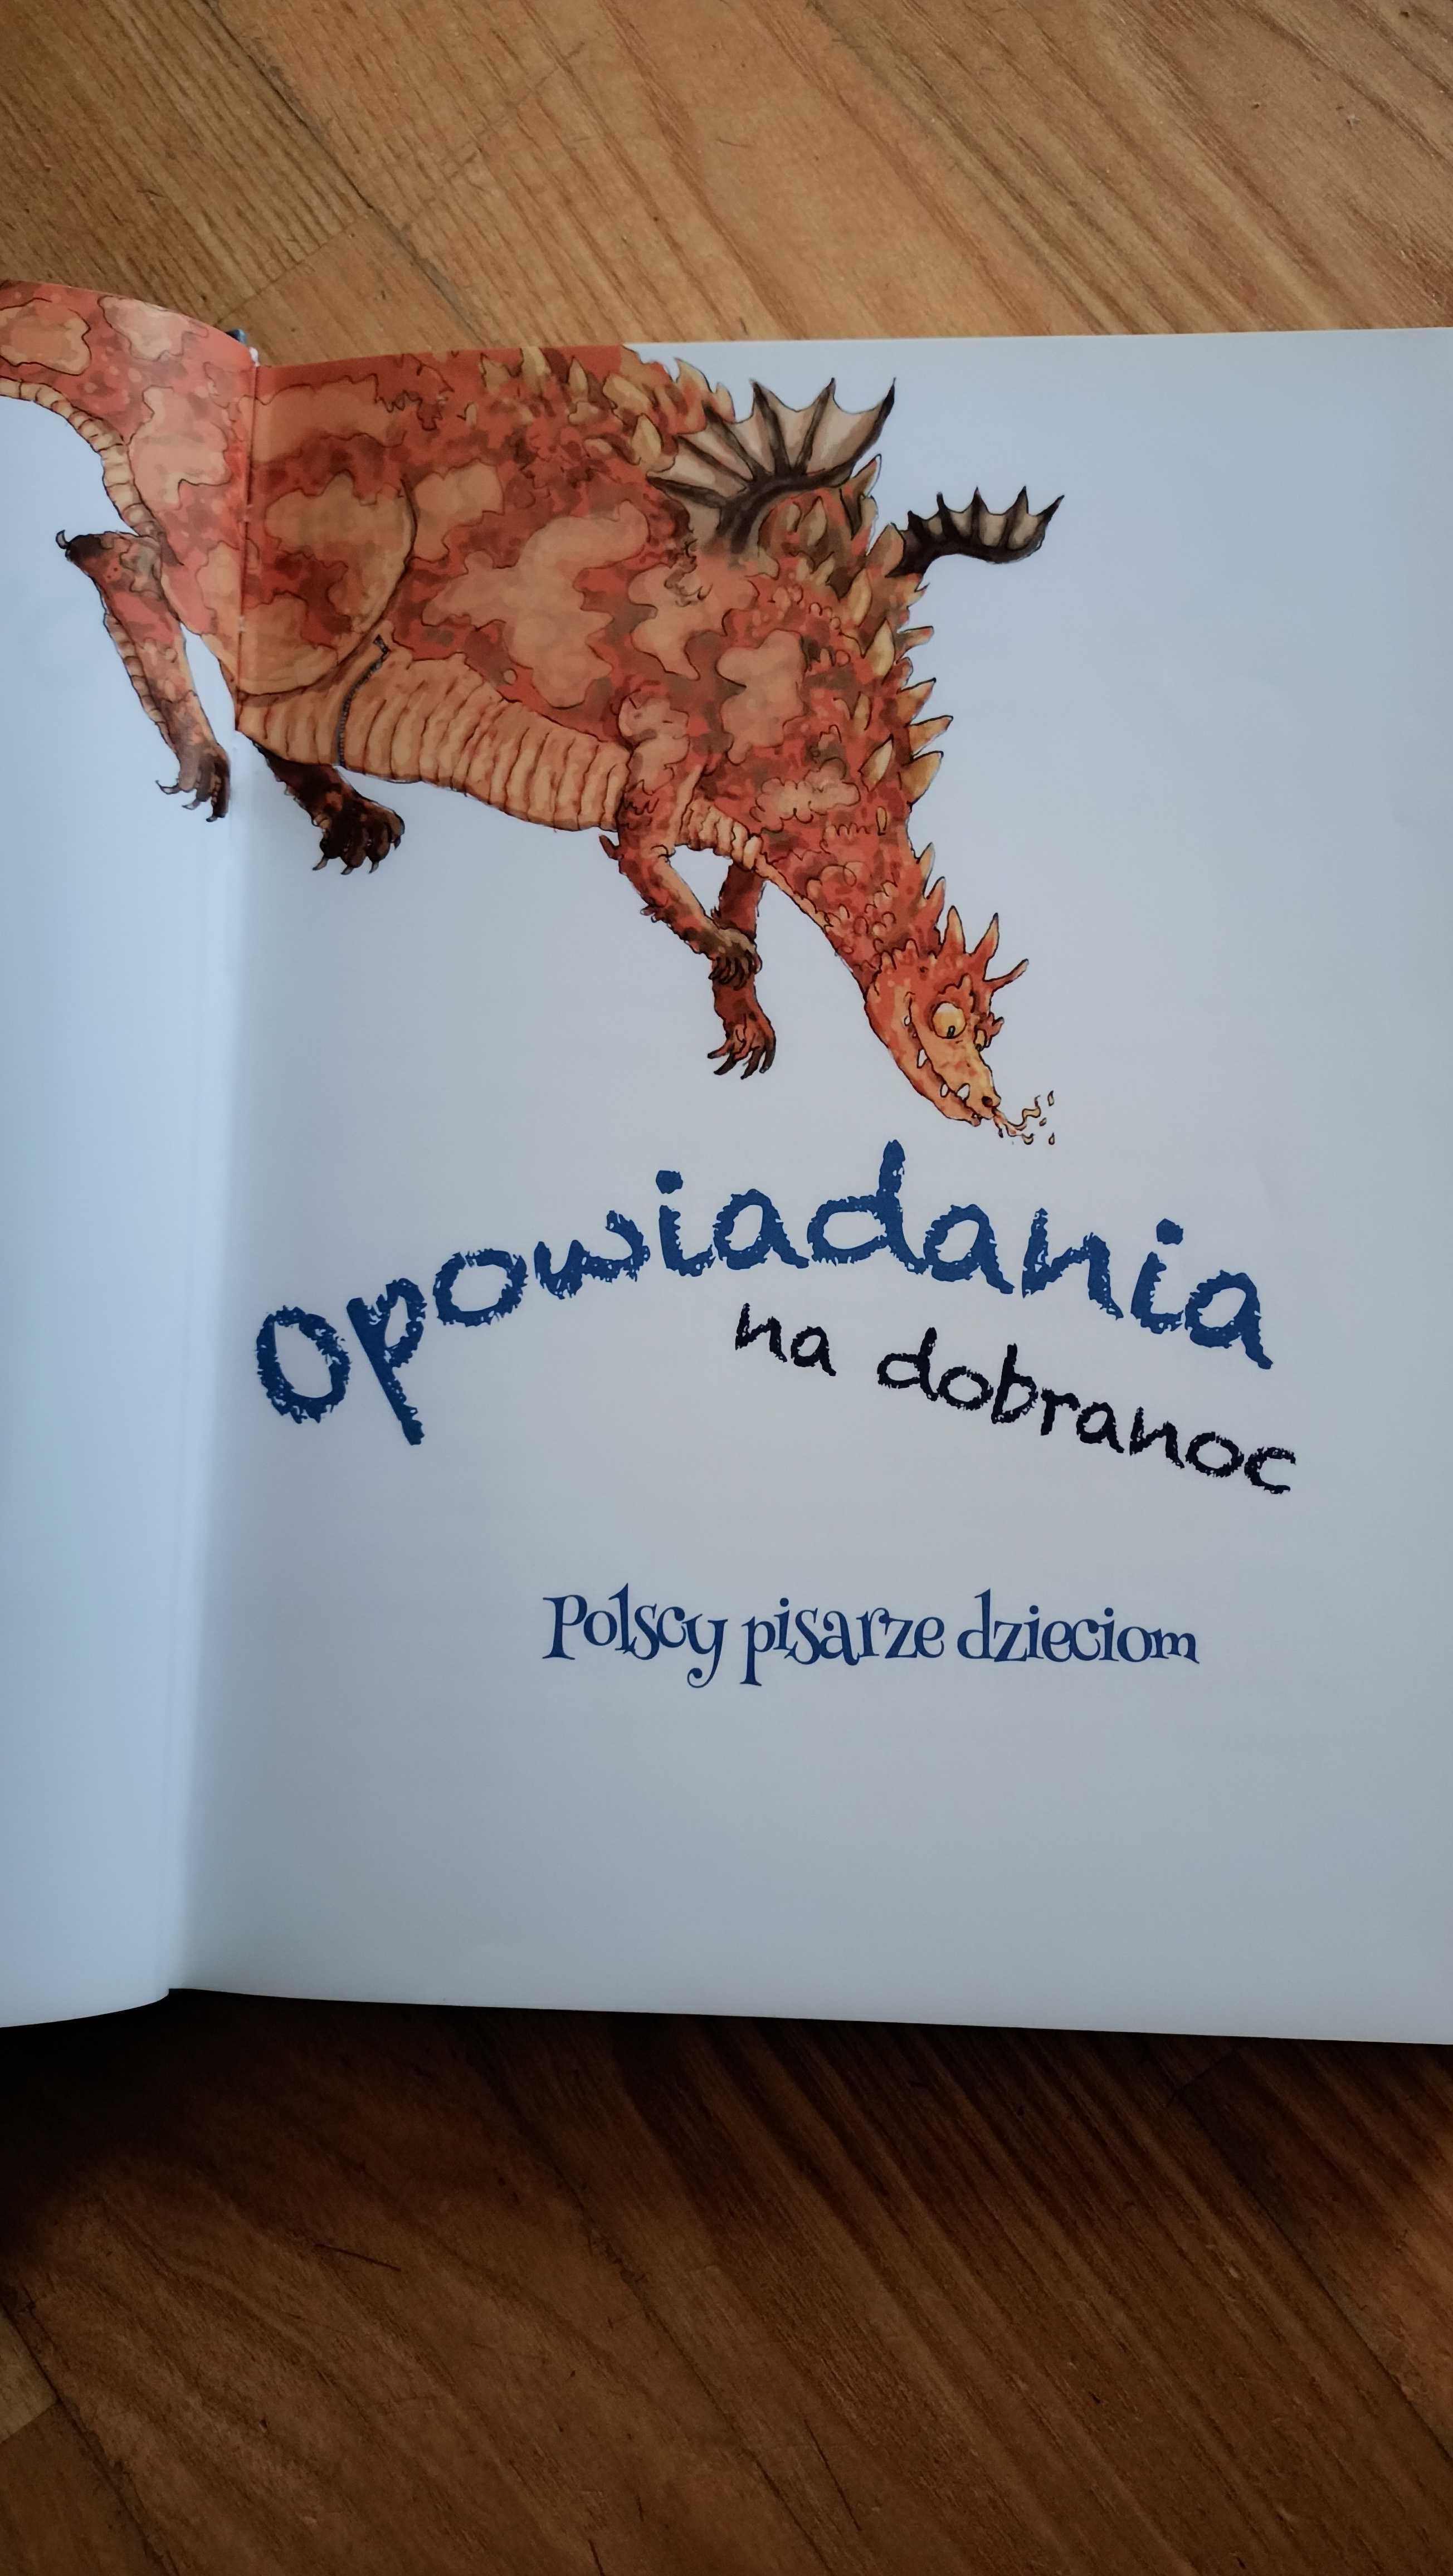 Opowiadania na dobranoc - polscy pisarze dzieciom, ksiażka z płytą CD